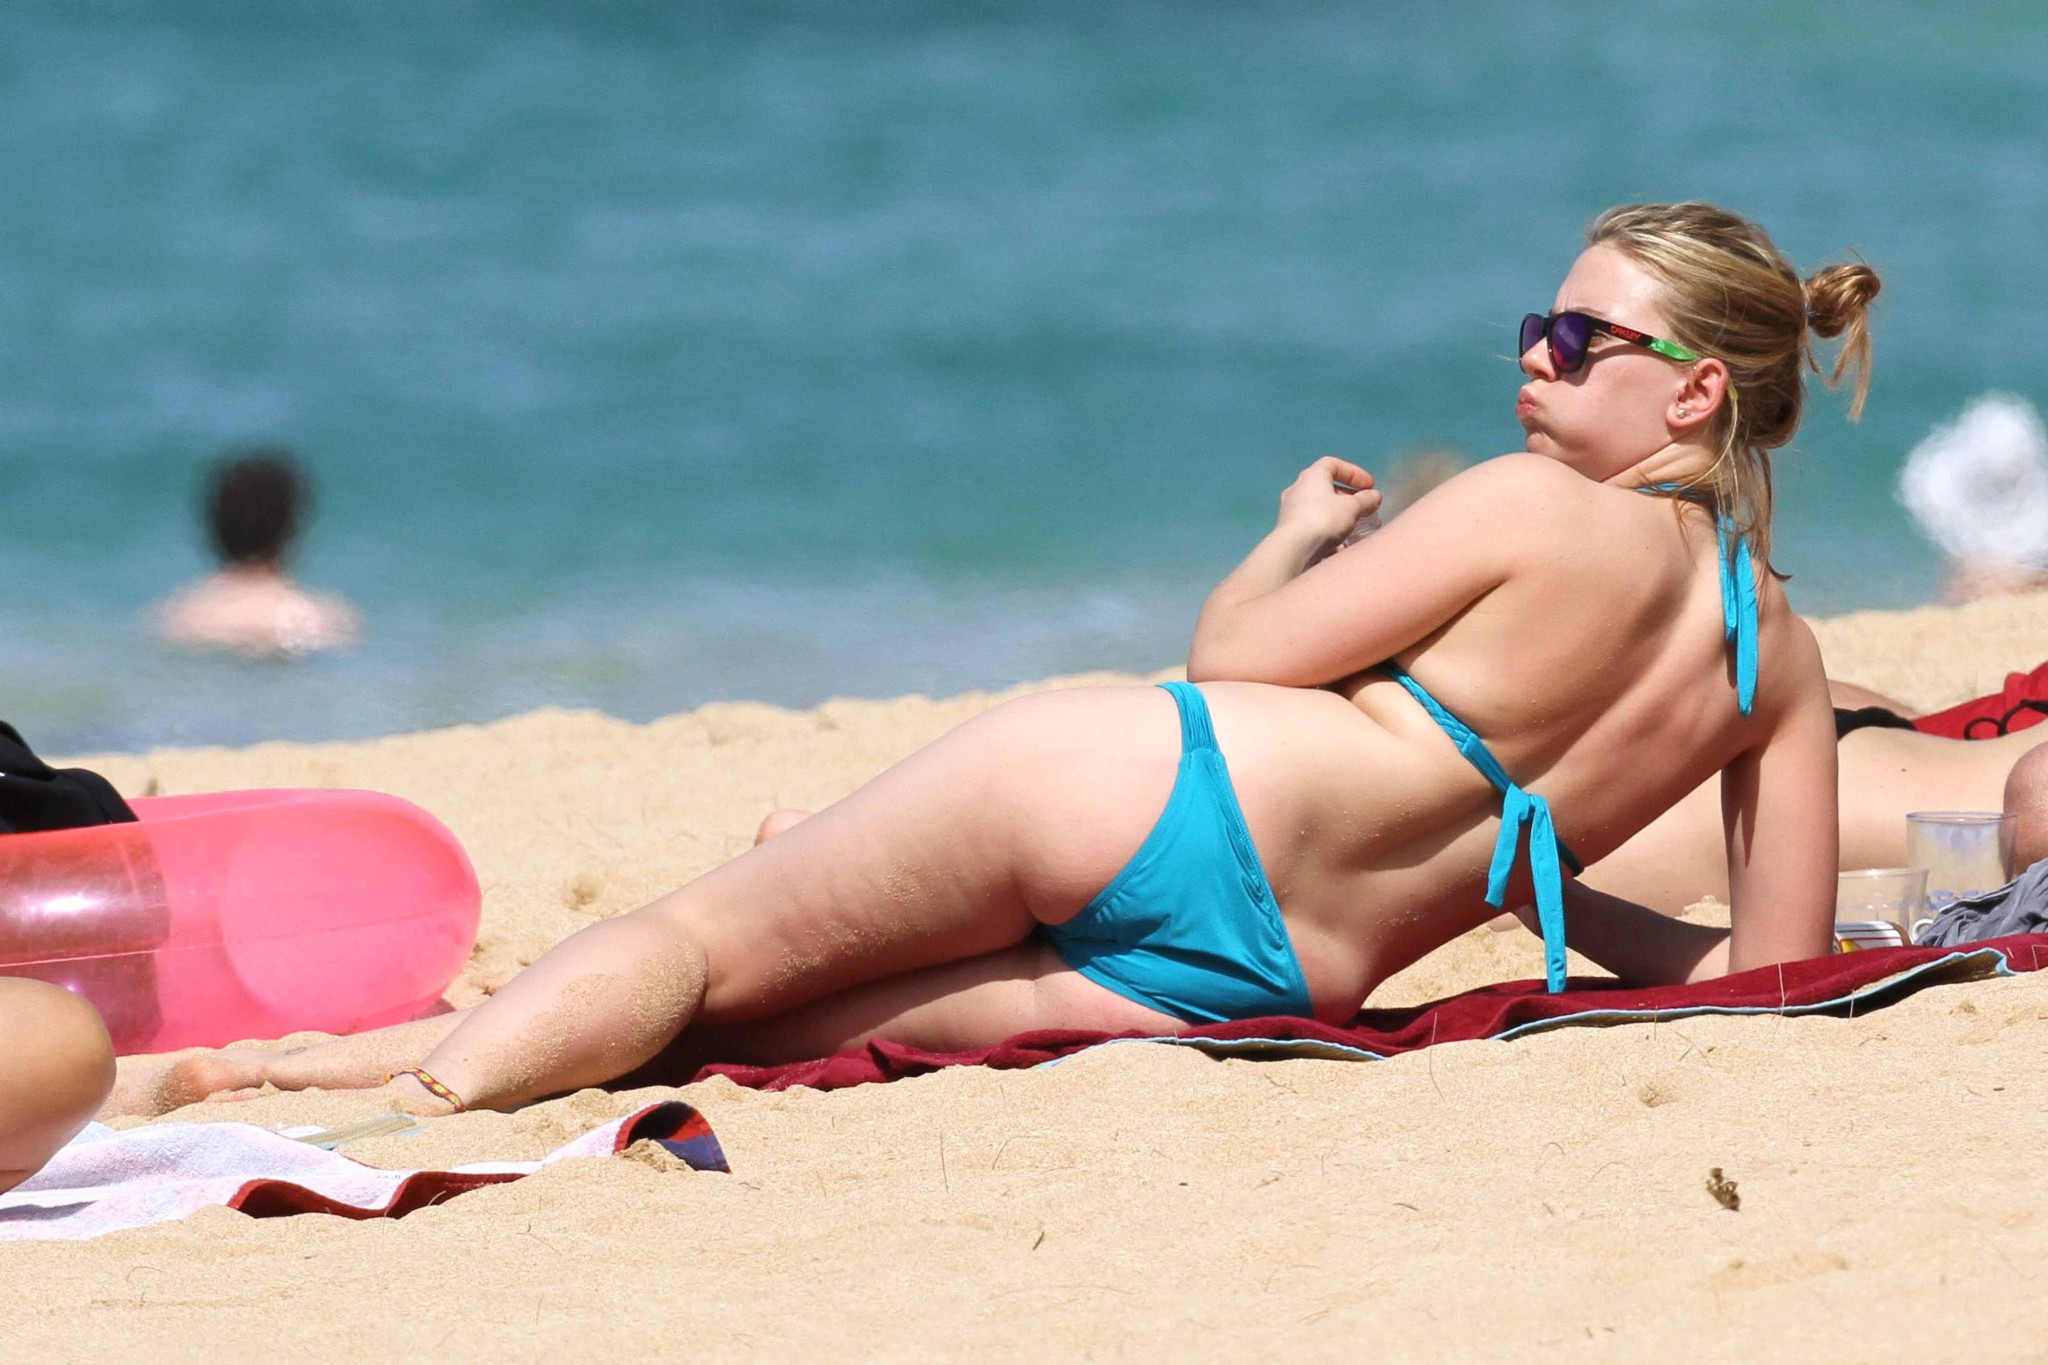 Scarlett johansson vollbusig trägt himmelblauen Bikini am hawaiianischen Strand
 #75274377